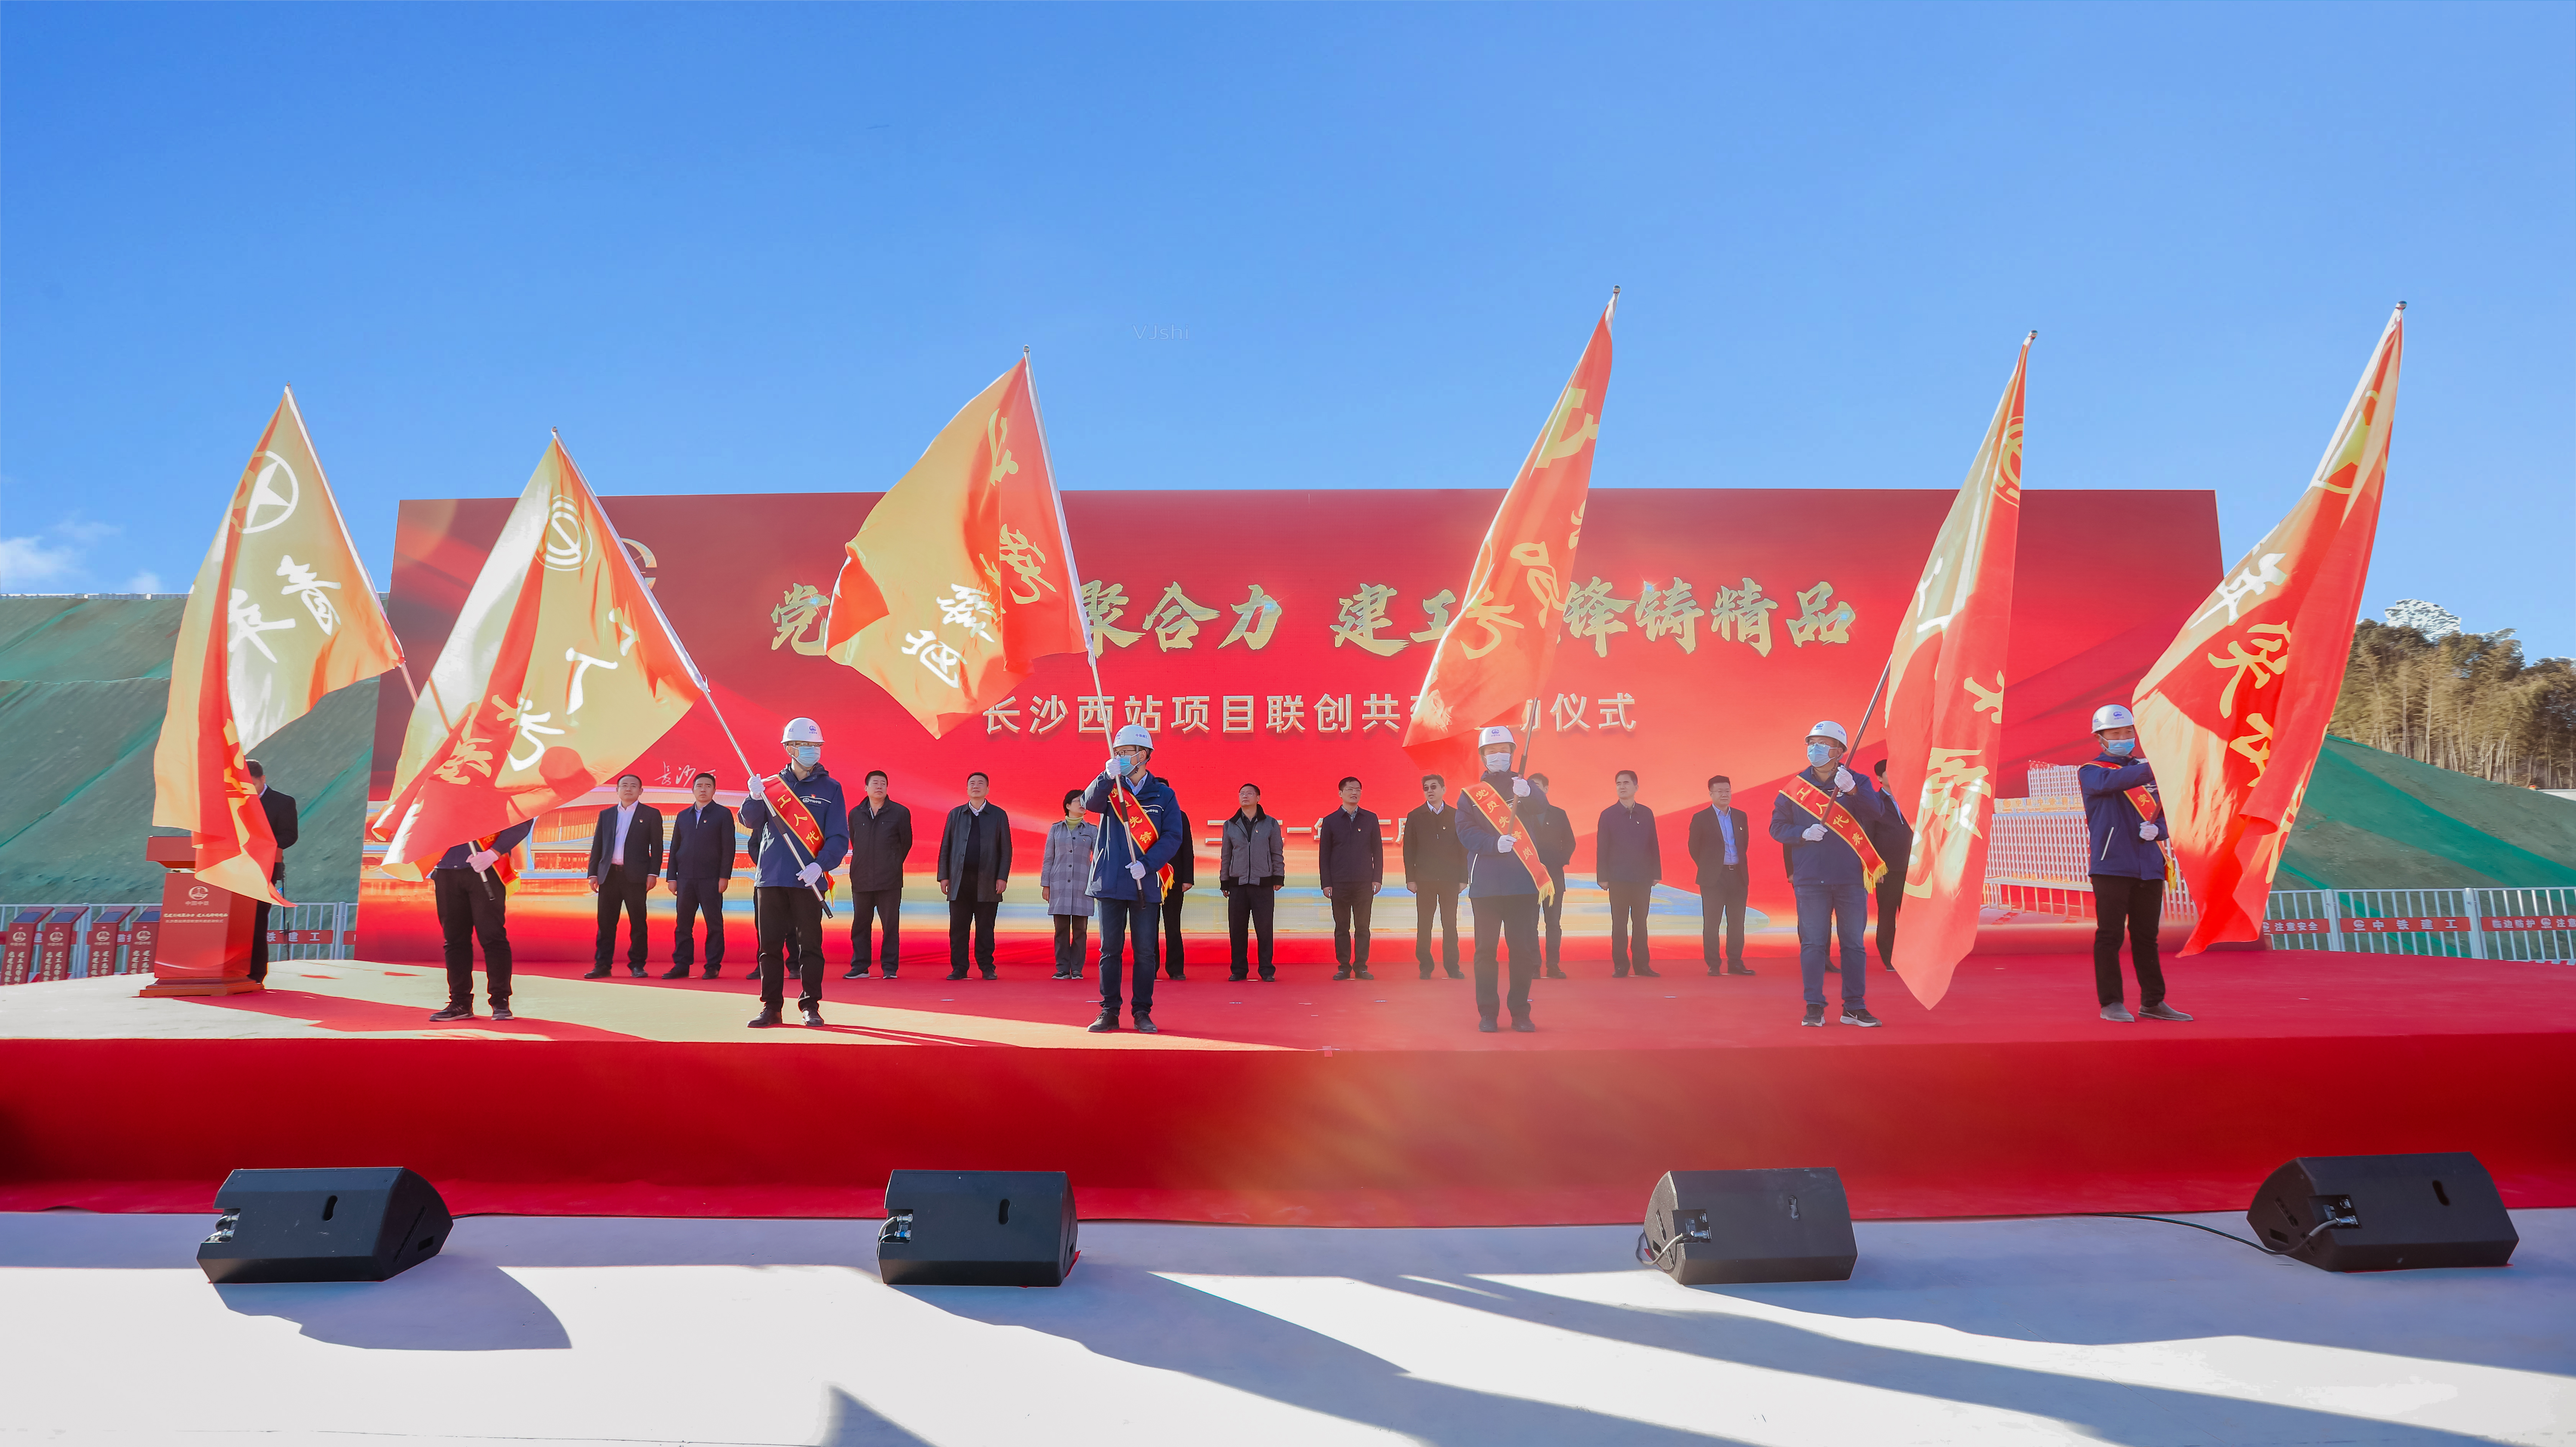 现场举行项目党员先锋岗、工人先锋号、青年突击队代表授旗仪式。